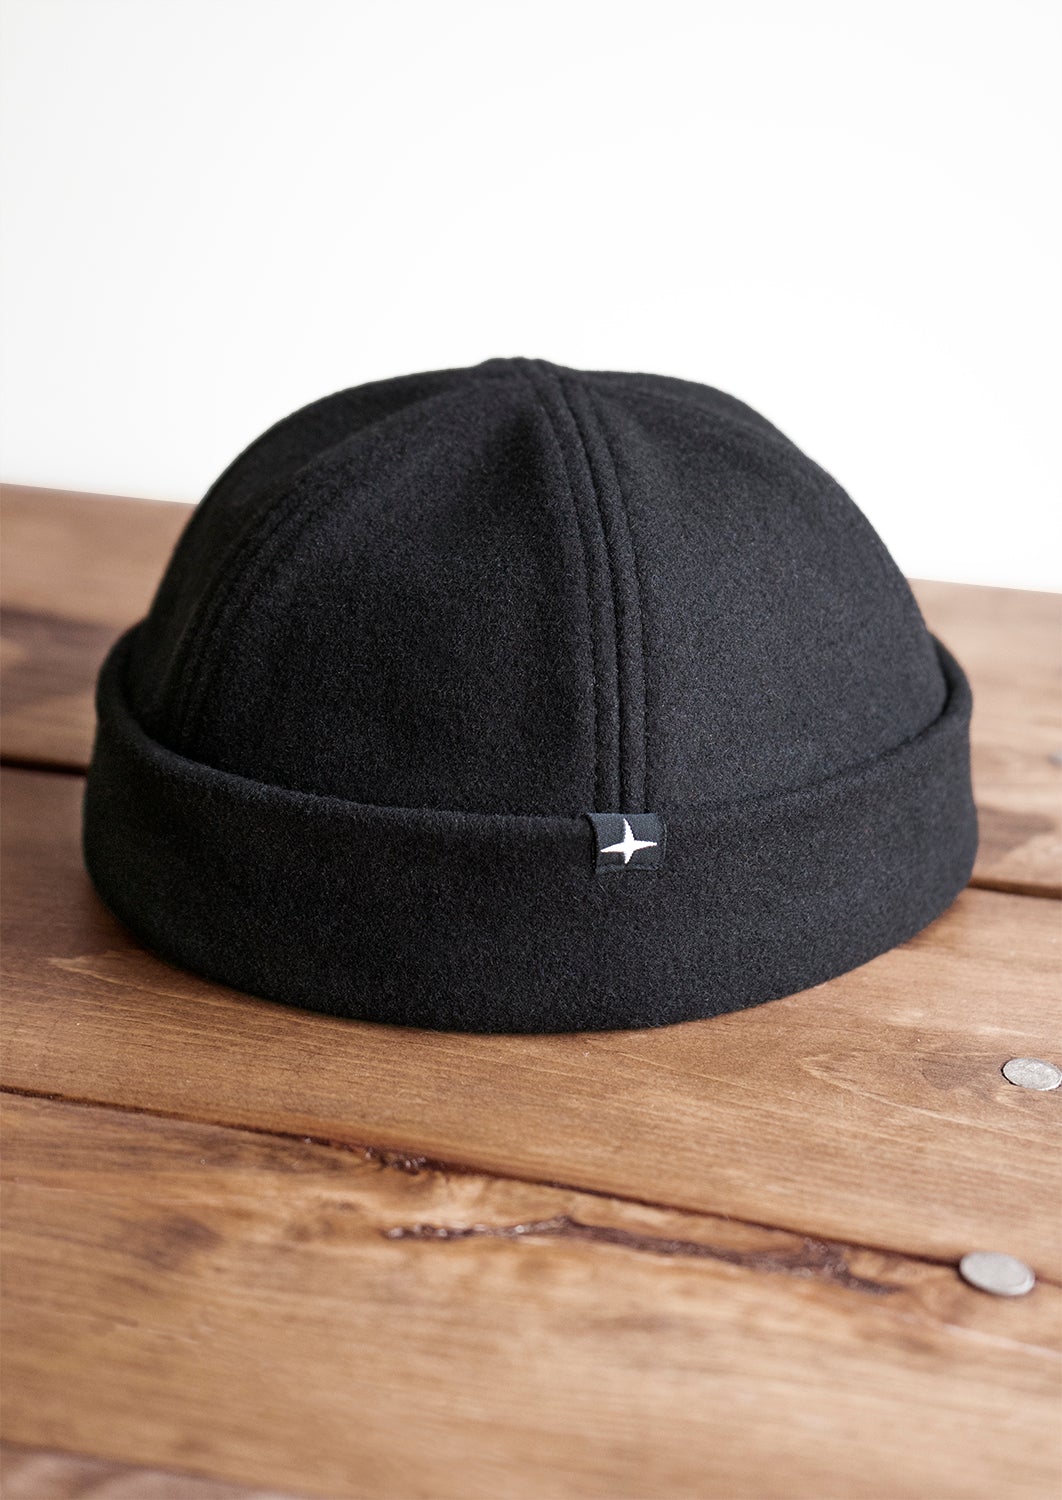 SWENN - Fisherman docker hat in felted wool made in Montreal